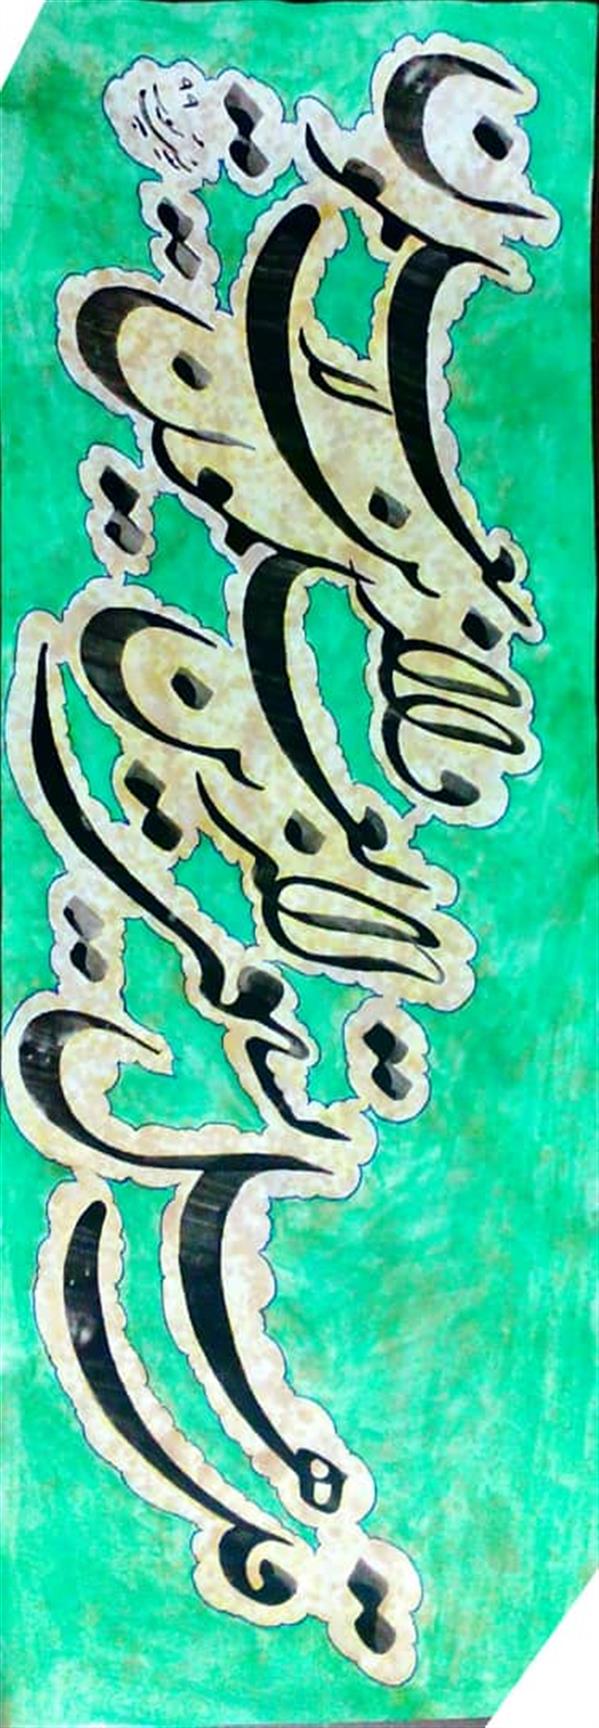 هنر خوشنویسی محفل خوشنویسی اکبر یونس پور قل هل یستوی الذین یعلمون والذین لایعلمون